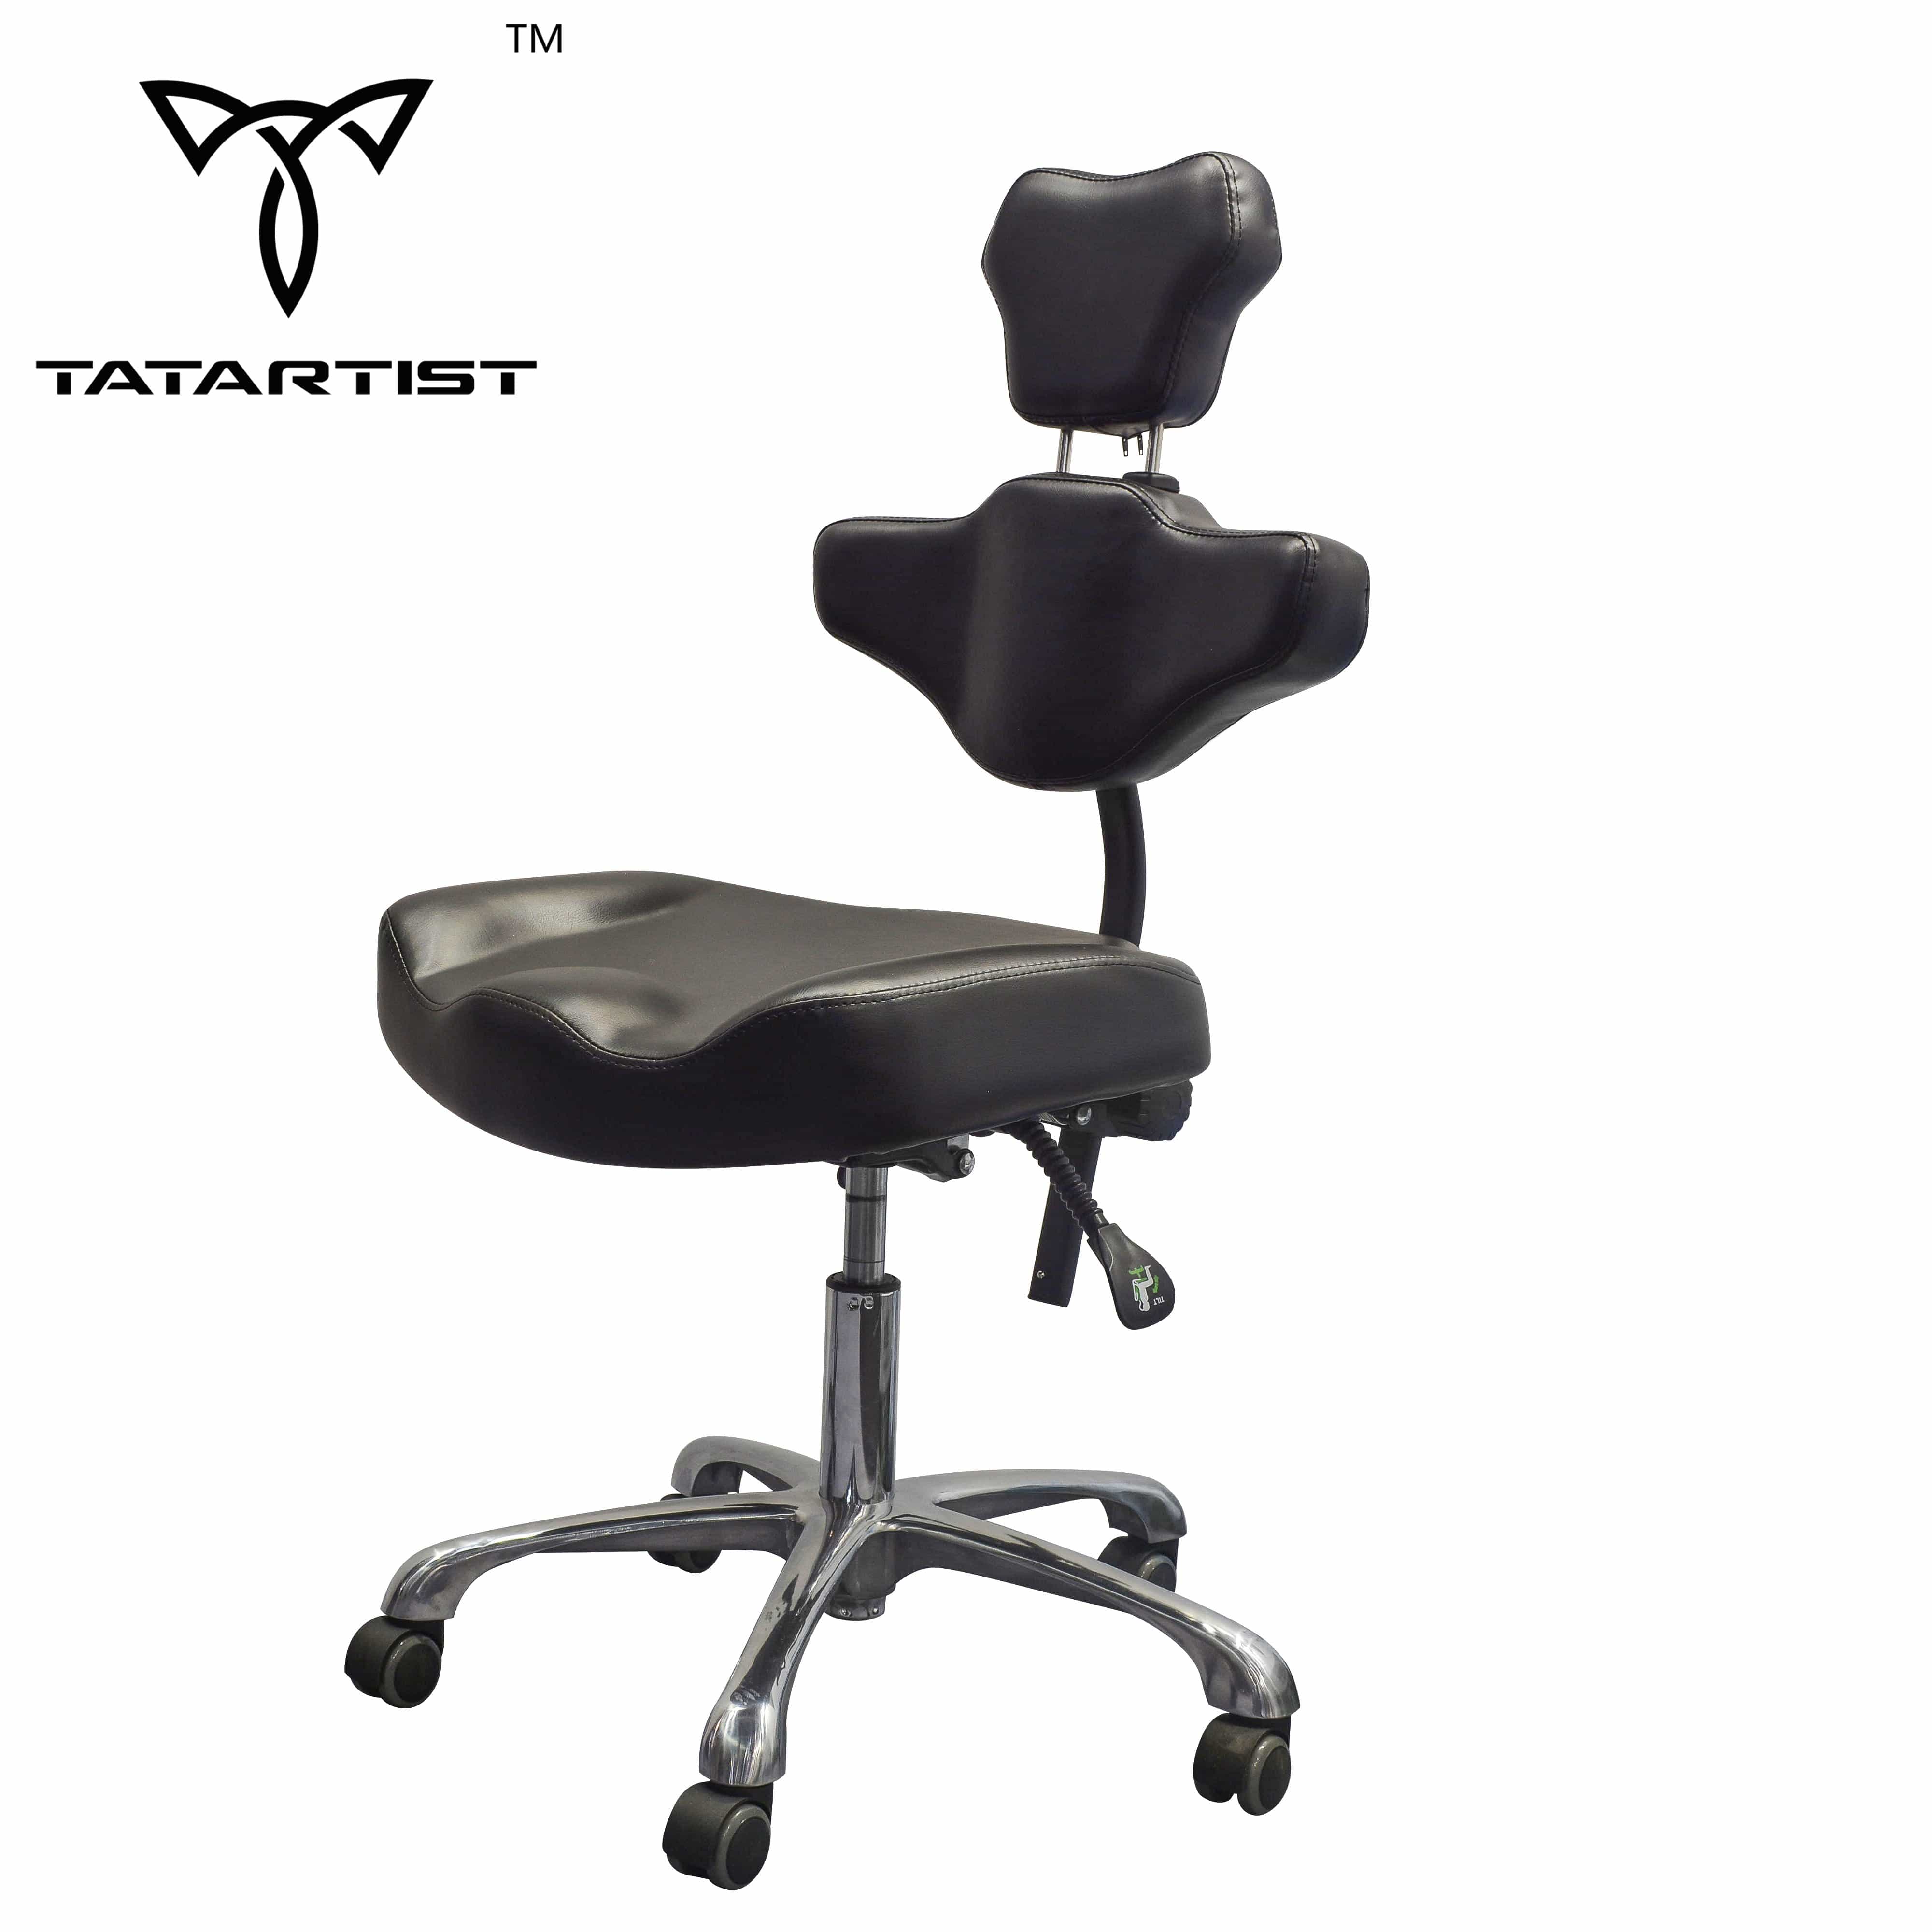 【CA】Paquetes de reposabrazos giratorio Tattoo XL, silla hidráulica para clientes de tatuajes y silla ergonómica ajustable para artistas